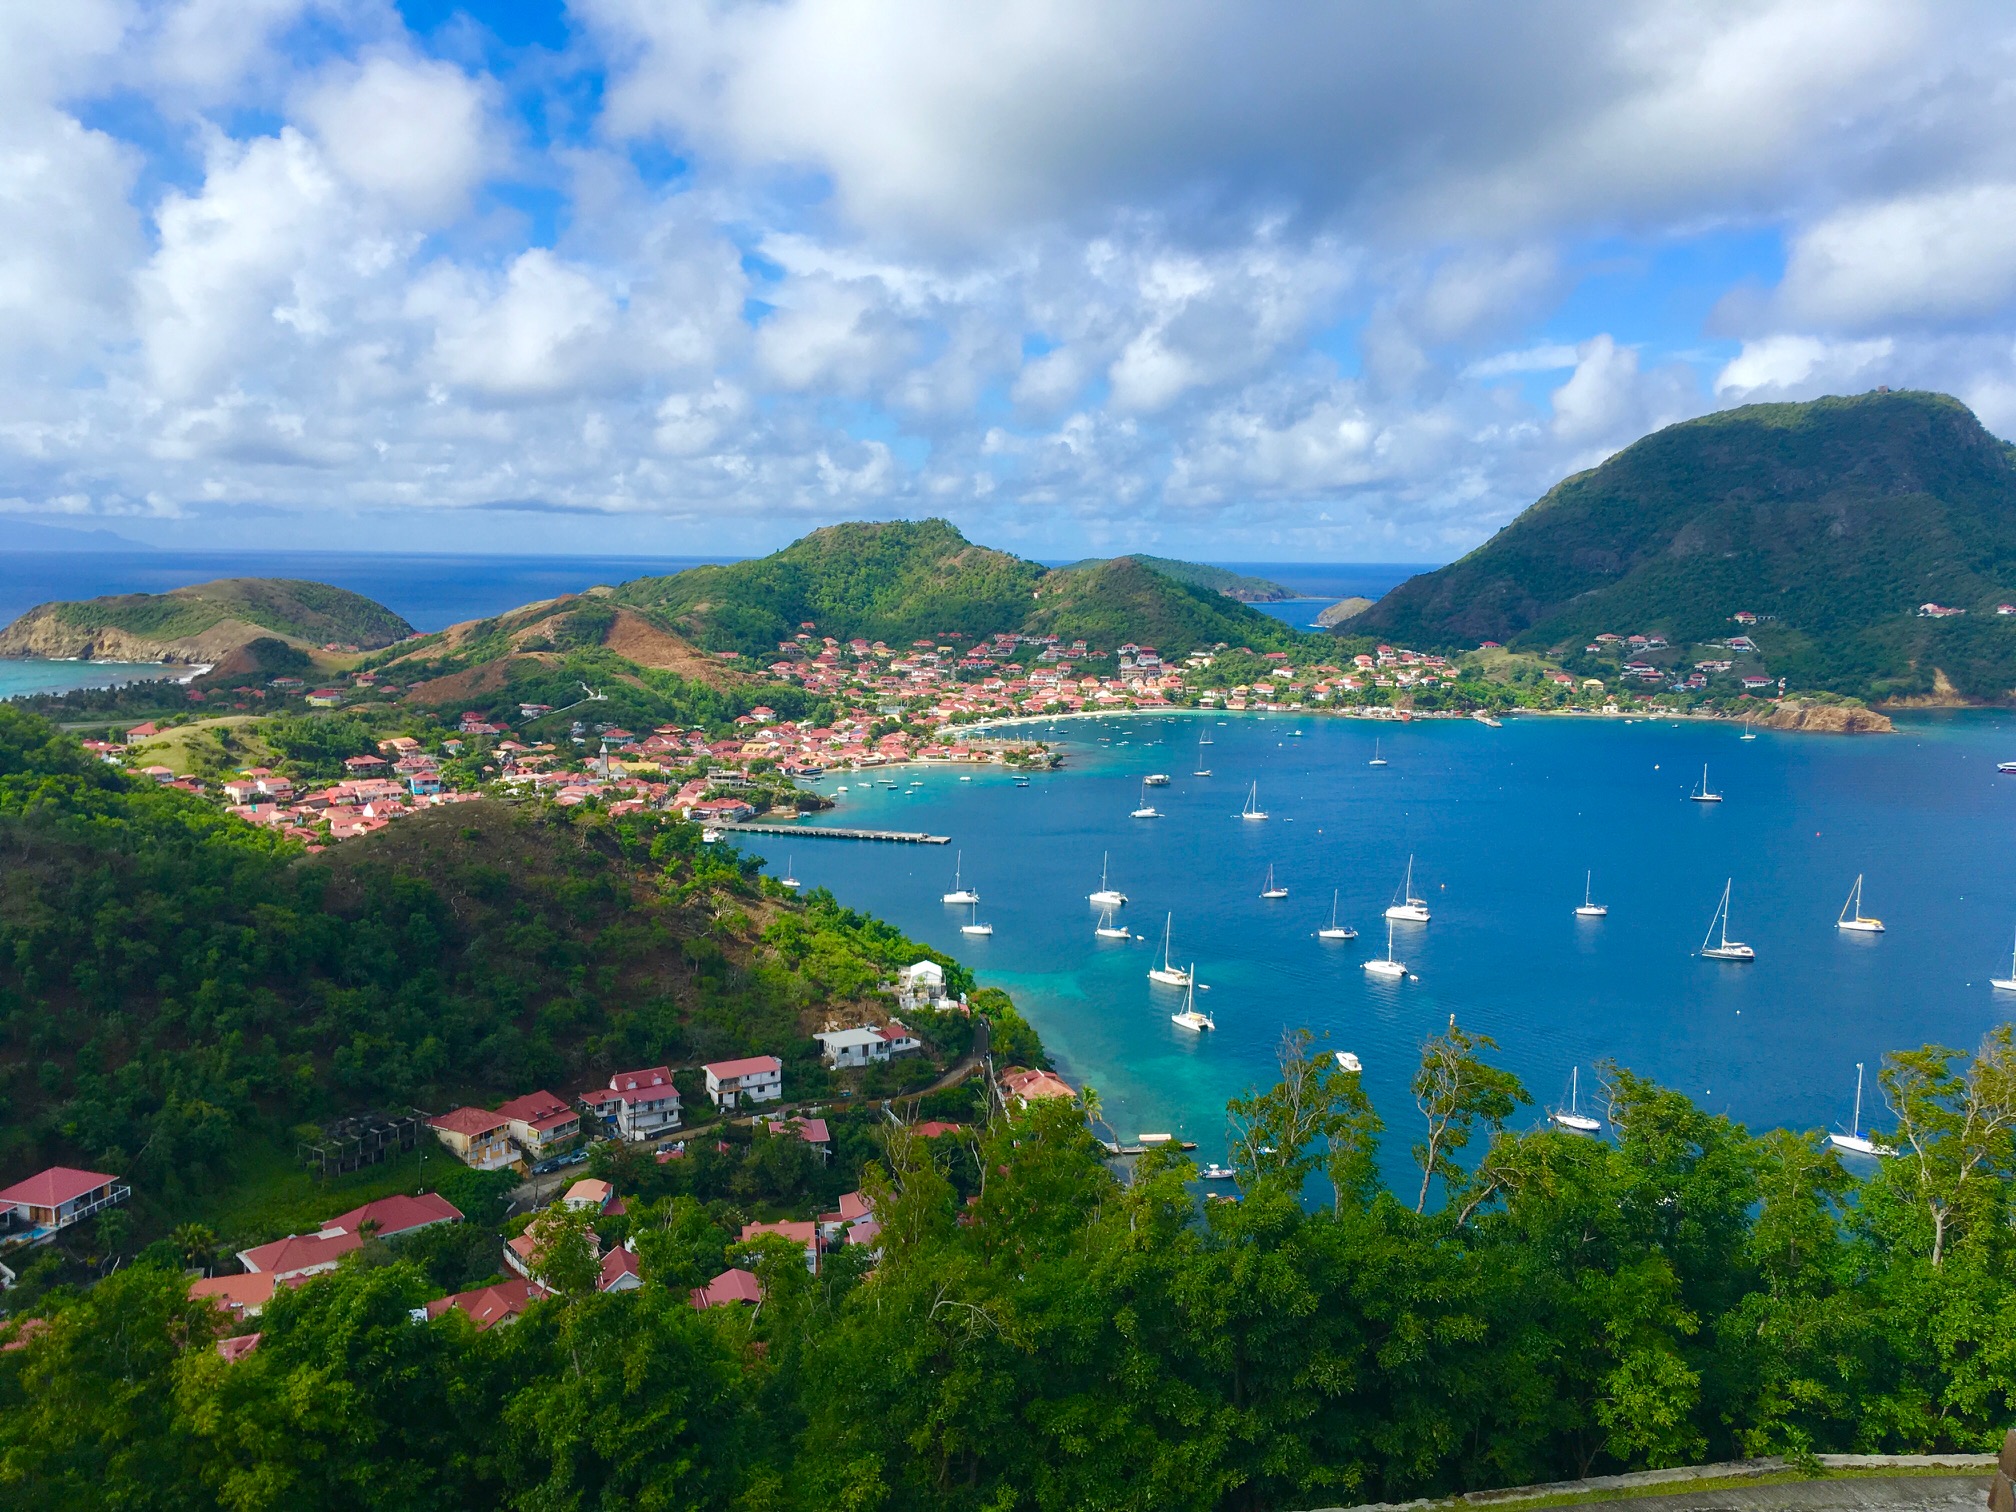     La Guadeloupe dans le top 10 des destinations les plus recherchées des Français

